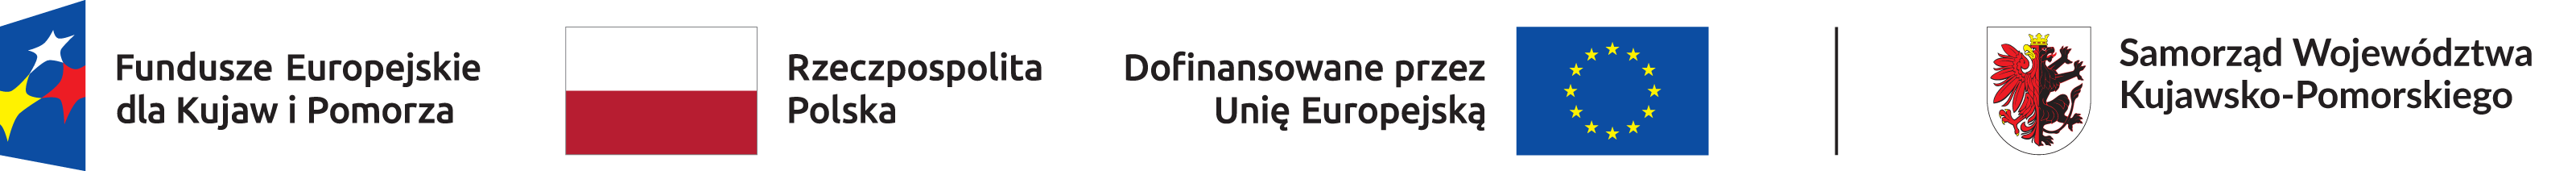 Logotypy: Fundusze Europejskie dla Kujaw i Pomorza, Rzeczpospolita Polska, Dofinansowane przez Unię Europejską, Samorząd Województwa Kujawsko-Pomorskiego